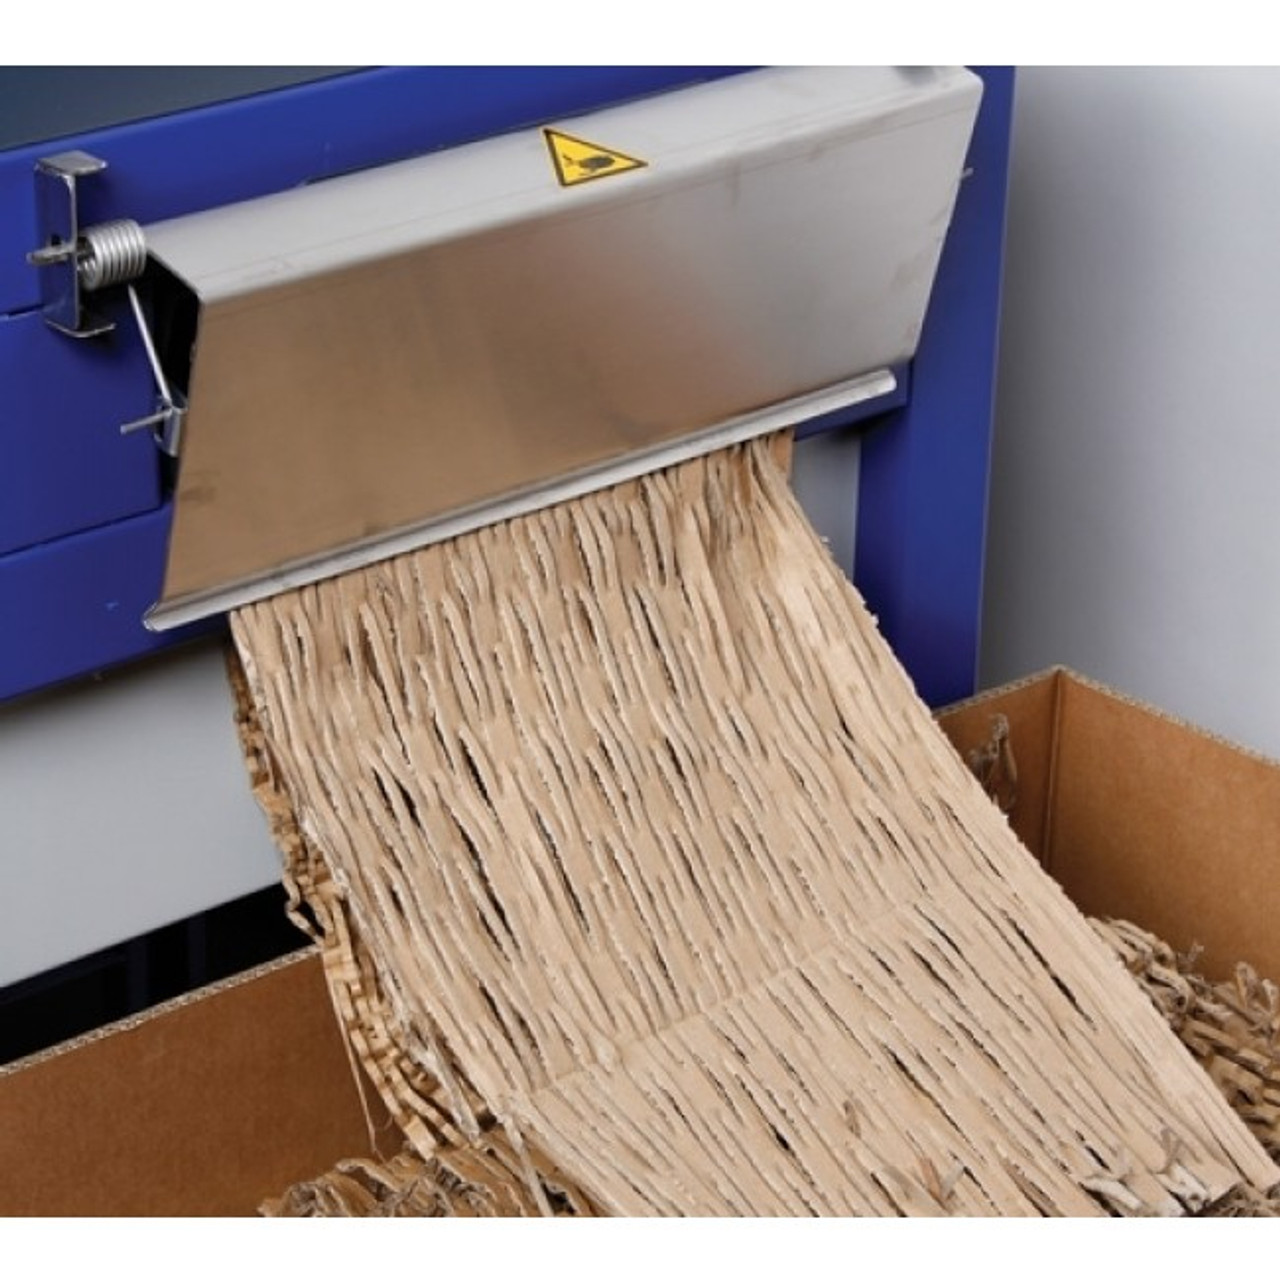 Optimax OP316 Cardboard Packaging Shredder - Void Fill Maker in Packaging  Supplies 